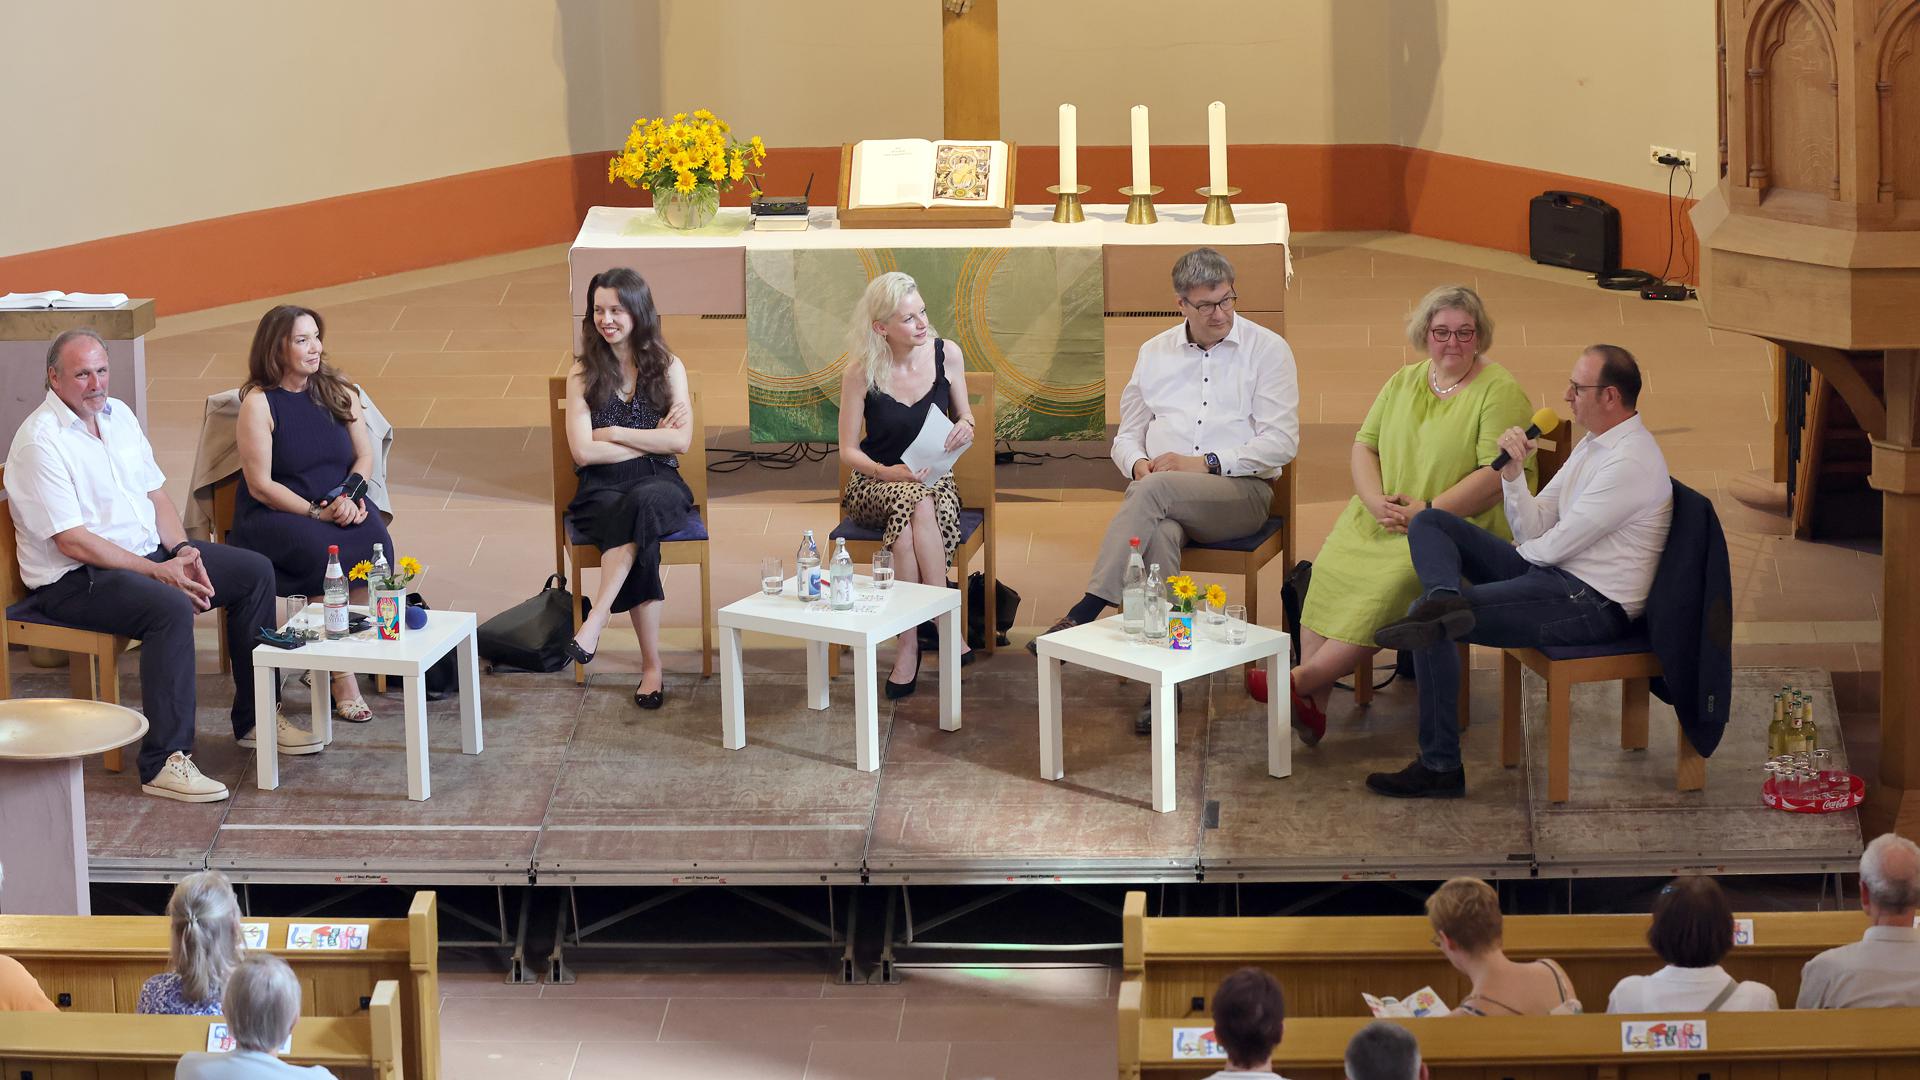 Wertediskussion in der Nordkirche in Neureut (von links): Detlev Hofmann, Jasmin Sahin, Zoe Mayer, Anne Helene Kratzert, Eckart Köhne, Heike Springhart und Thomas Sprecher.